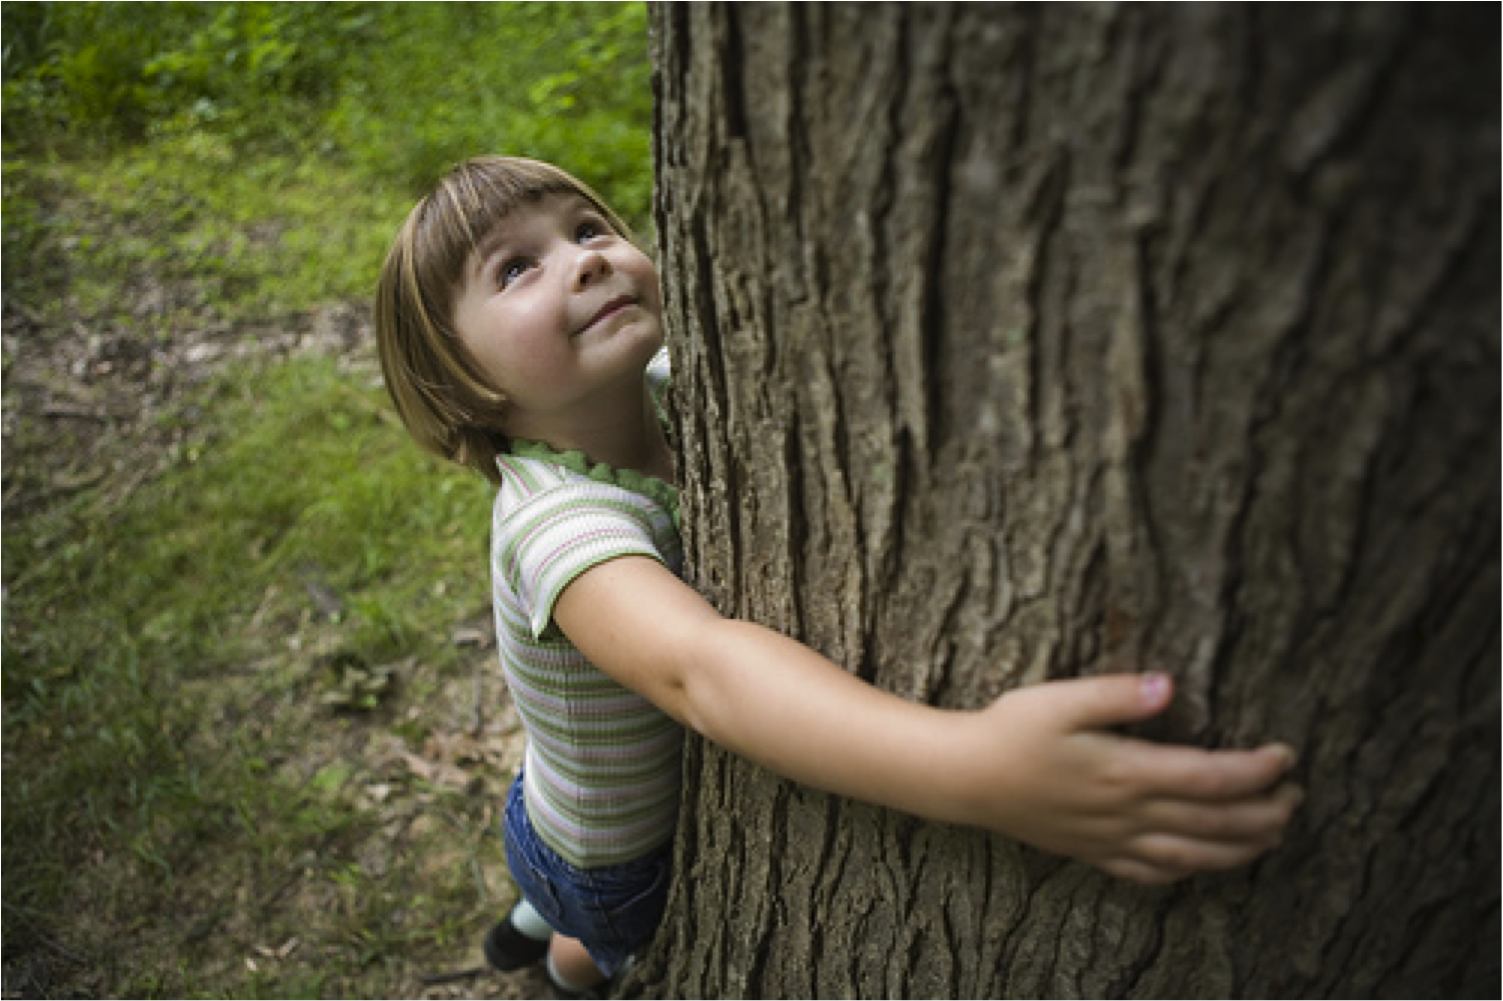 Child nature. Дерево для детей. Дети и природа. Природа деревьев для детей. Любовь детей к природе.